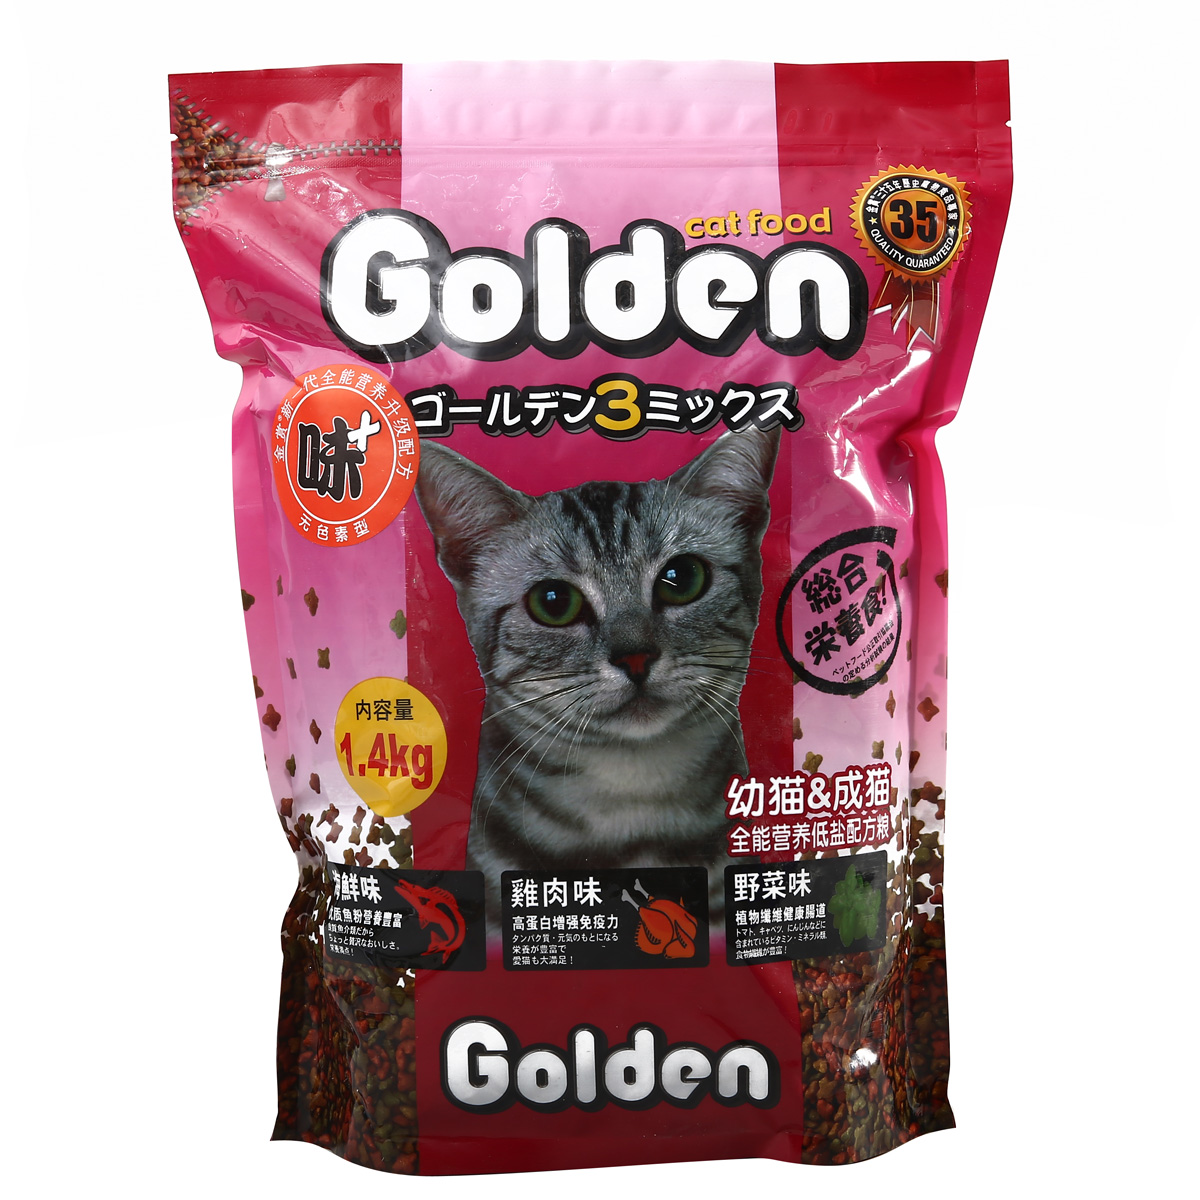 波奇网 宠物猫粮日本金赏低盐配方猫粮1.4kg成幼猫猫粮 全国包邮产品展示图4